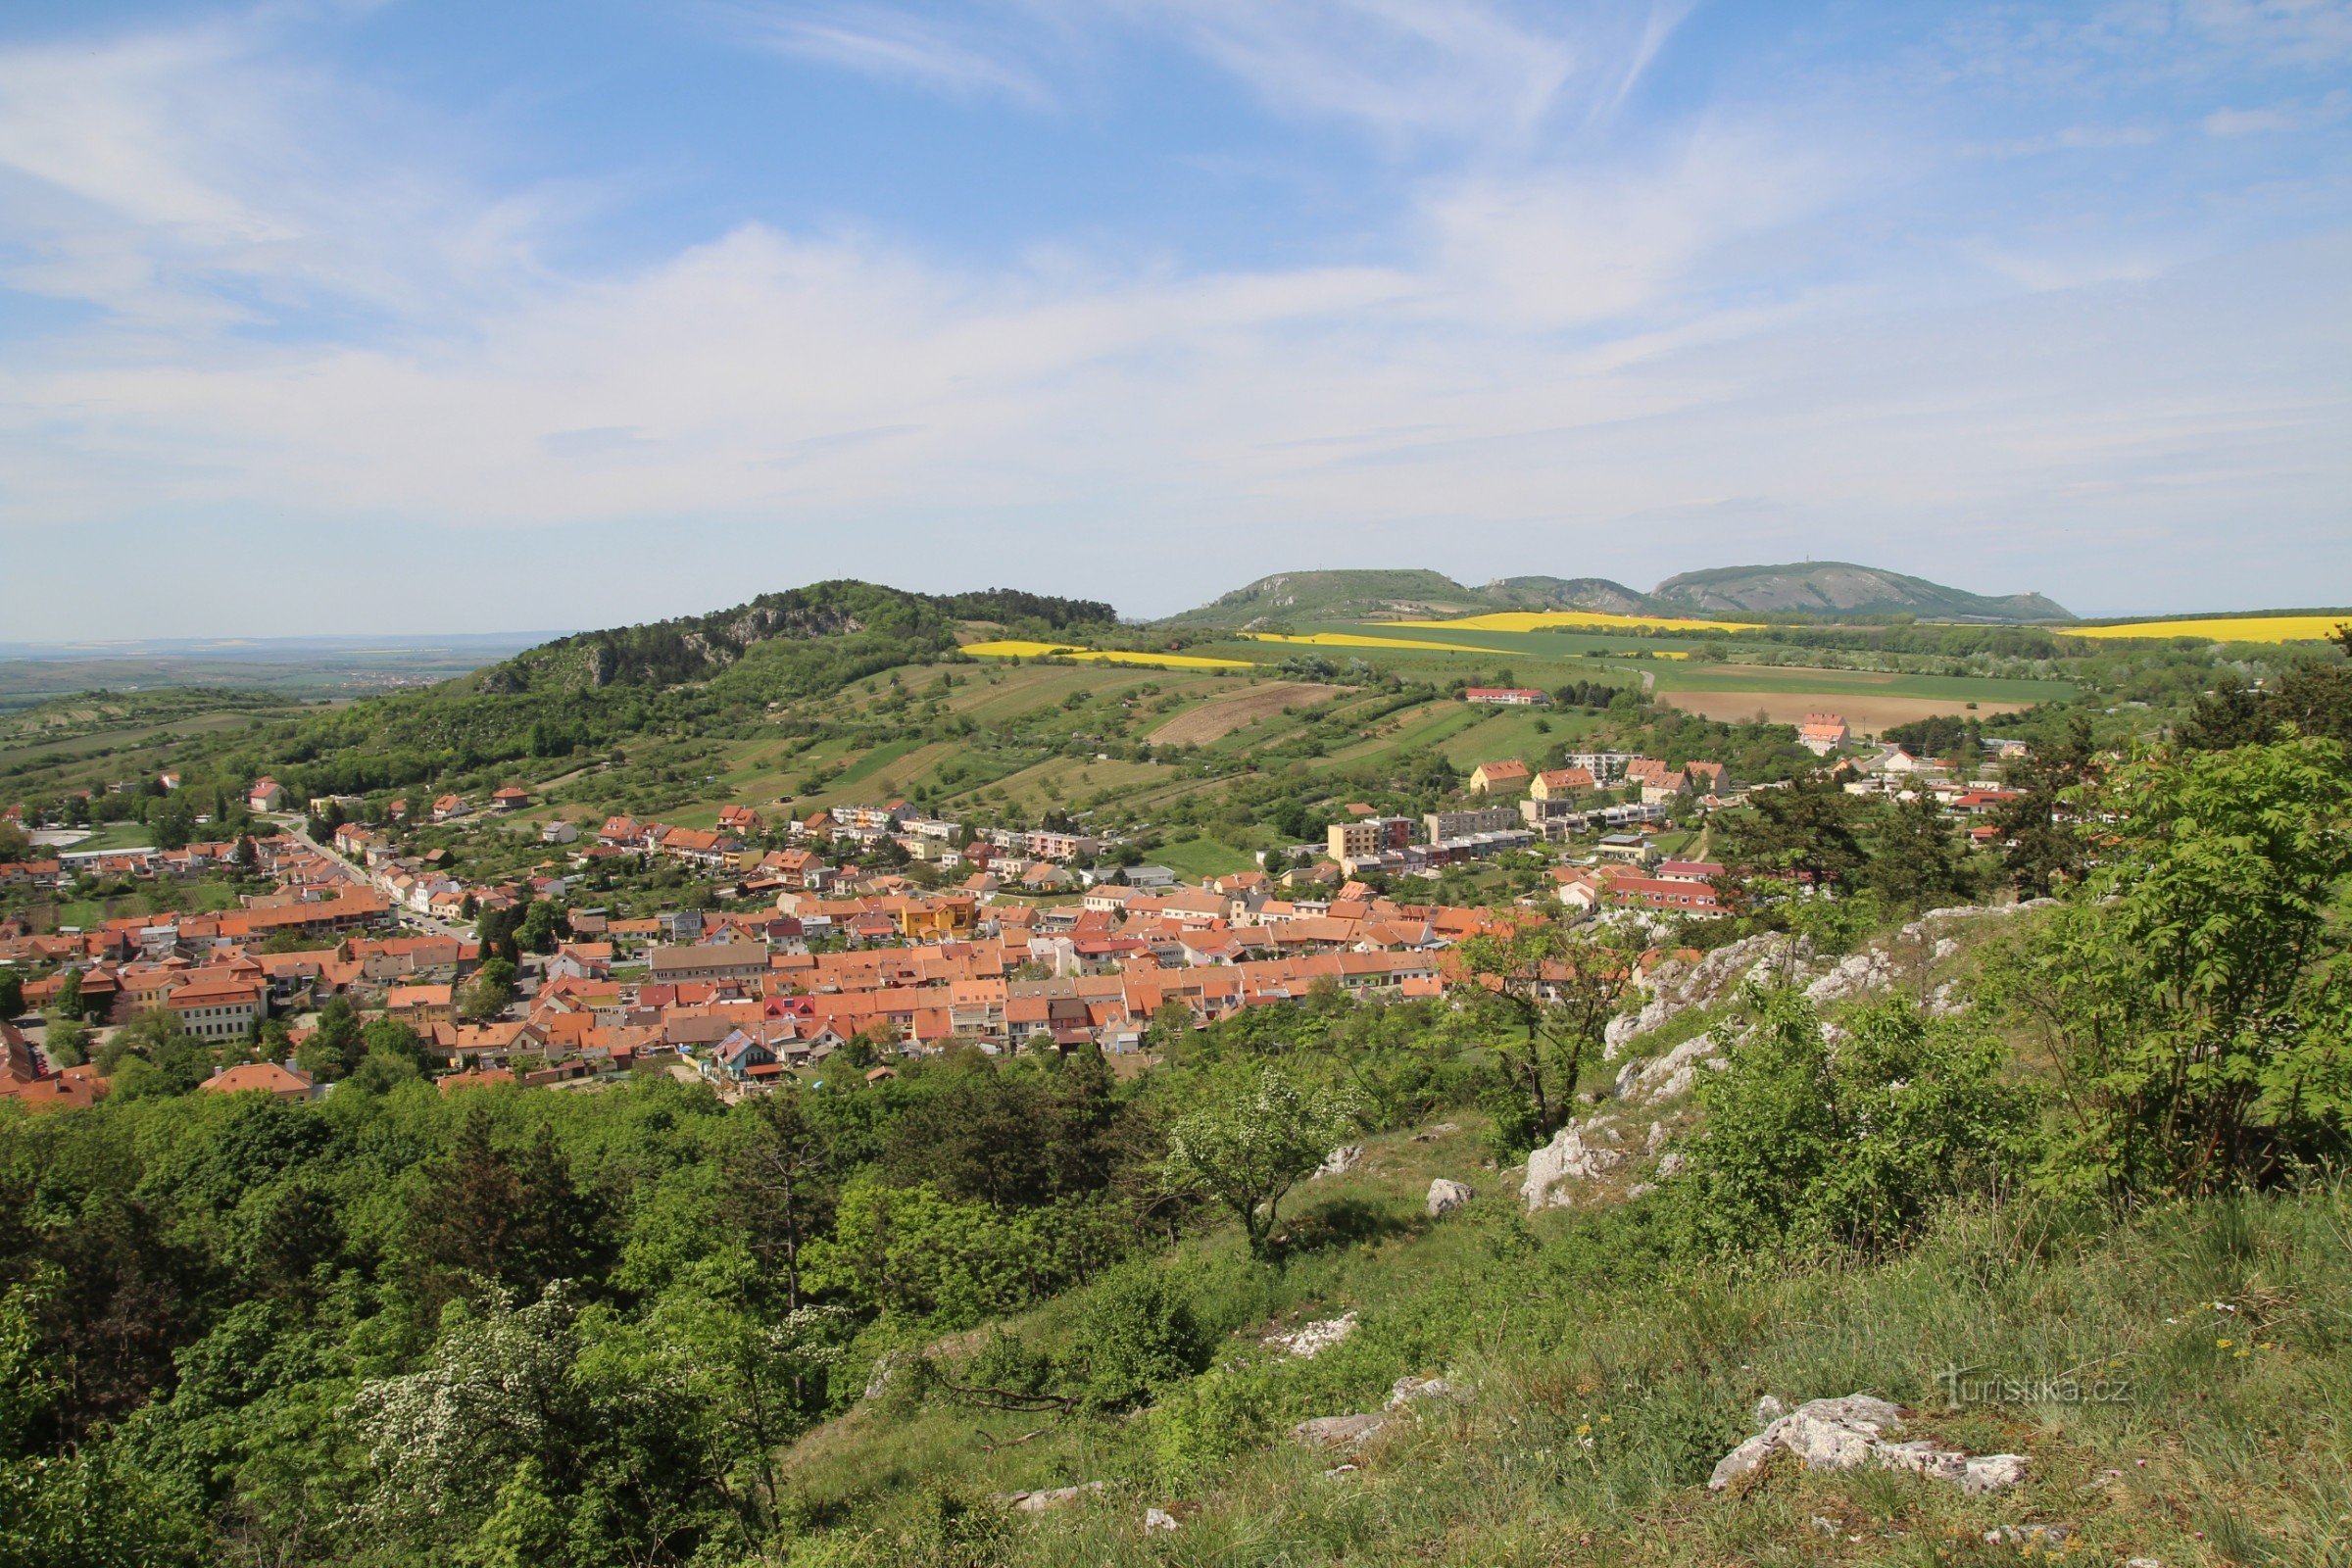 Άποψη ολόκληρης της κορυφογραμμής του Pavlovské vrchy